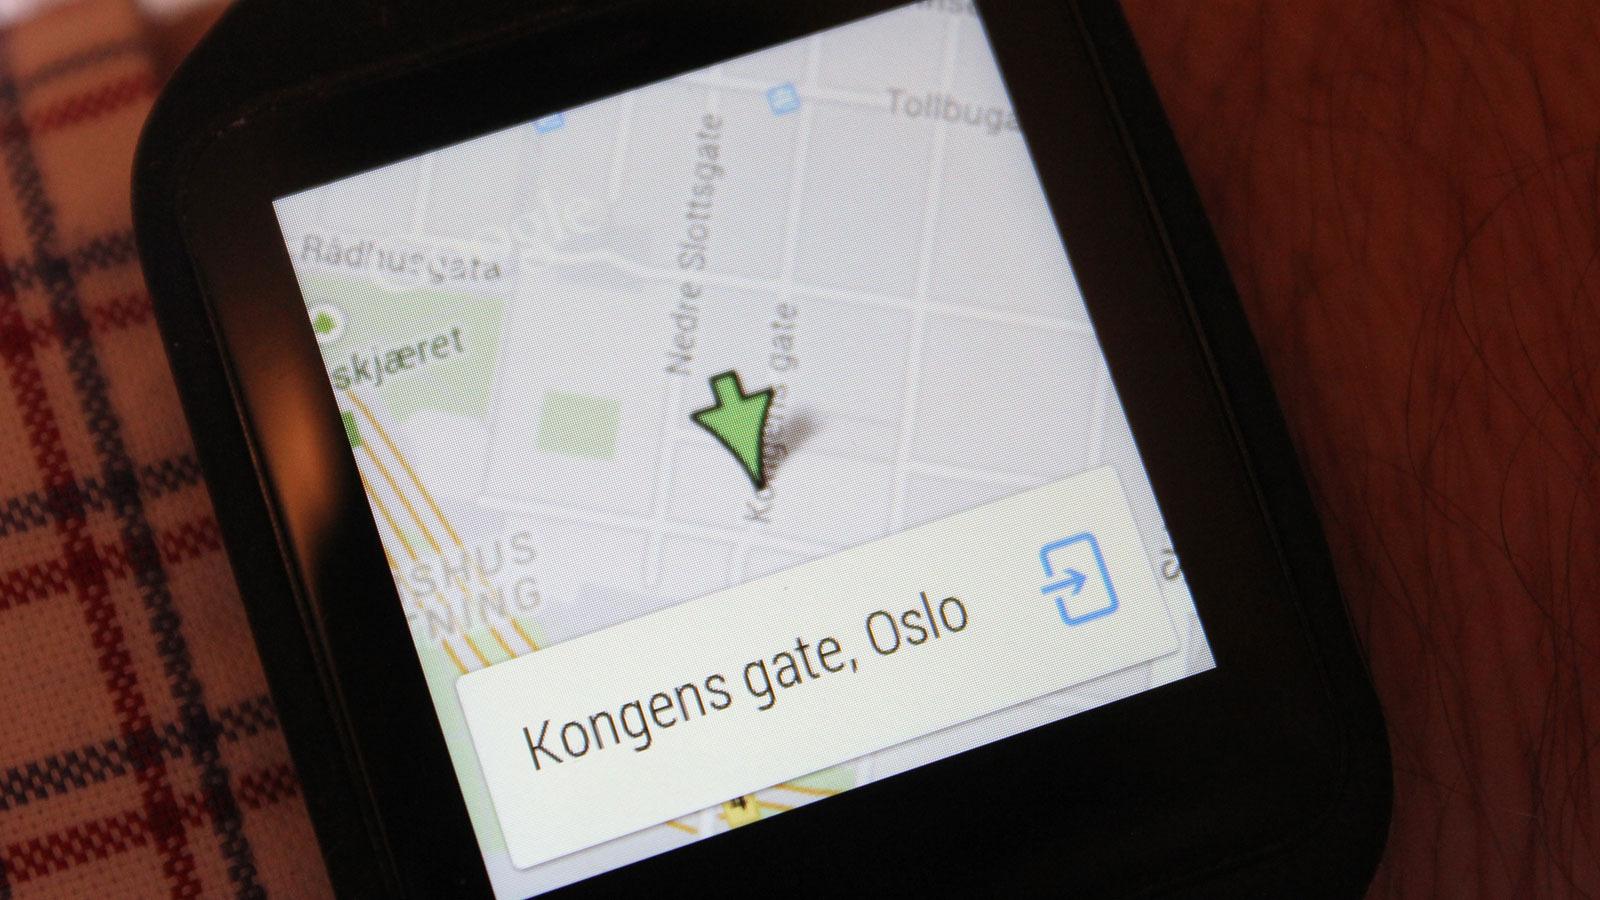 Søk etter et sted, og det vises et kart på klokka. Herfra kan du åpne for navigasjon på mobilen med piler som viser kjøreinstruksjoner på klokkeskjermen.Foto: Espen Irwing Swang, Tek.no